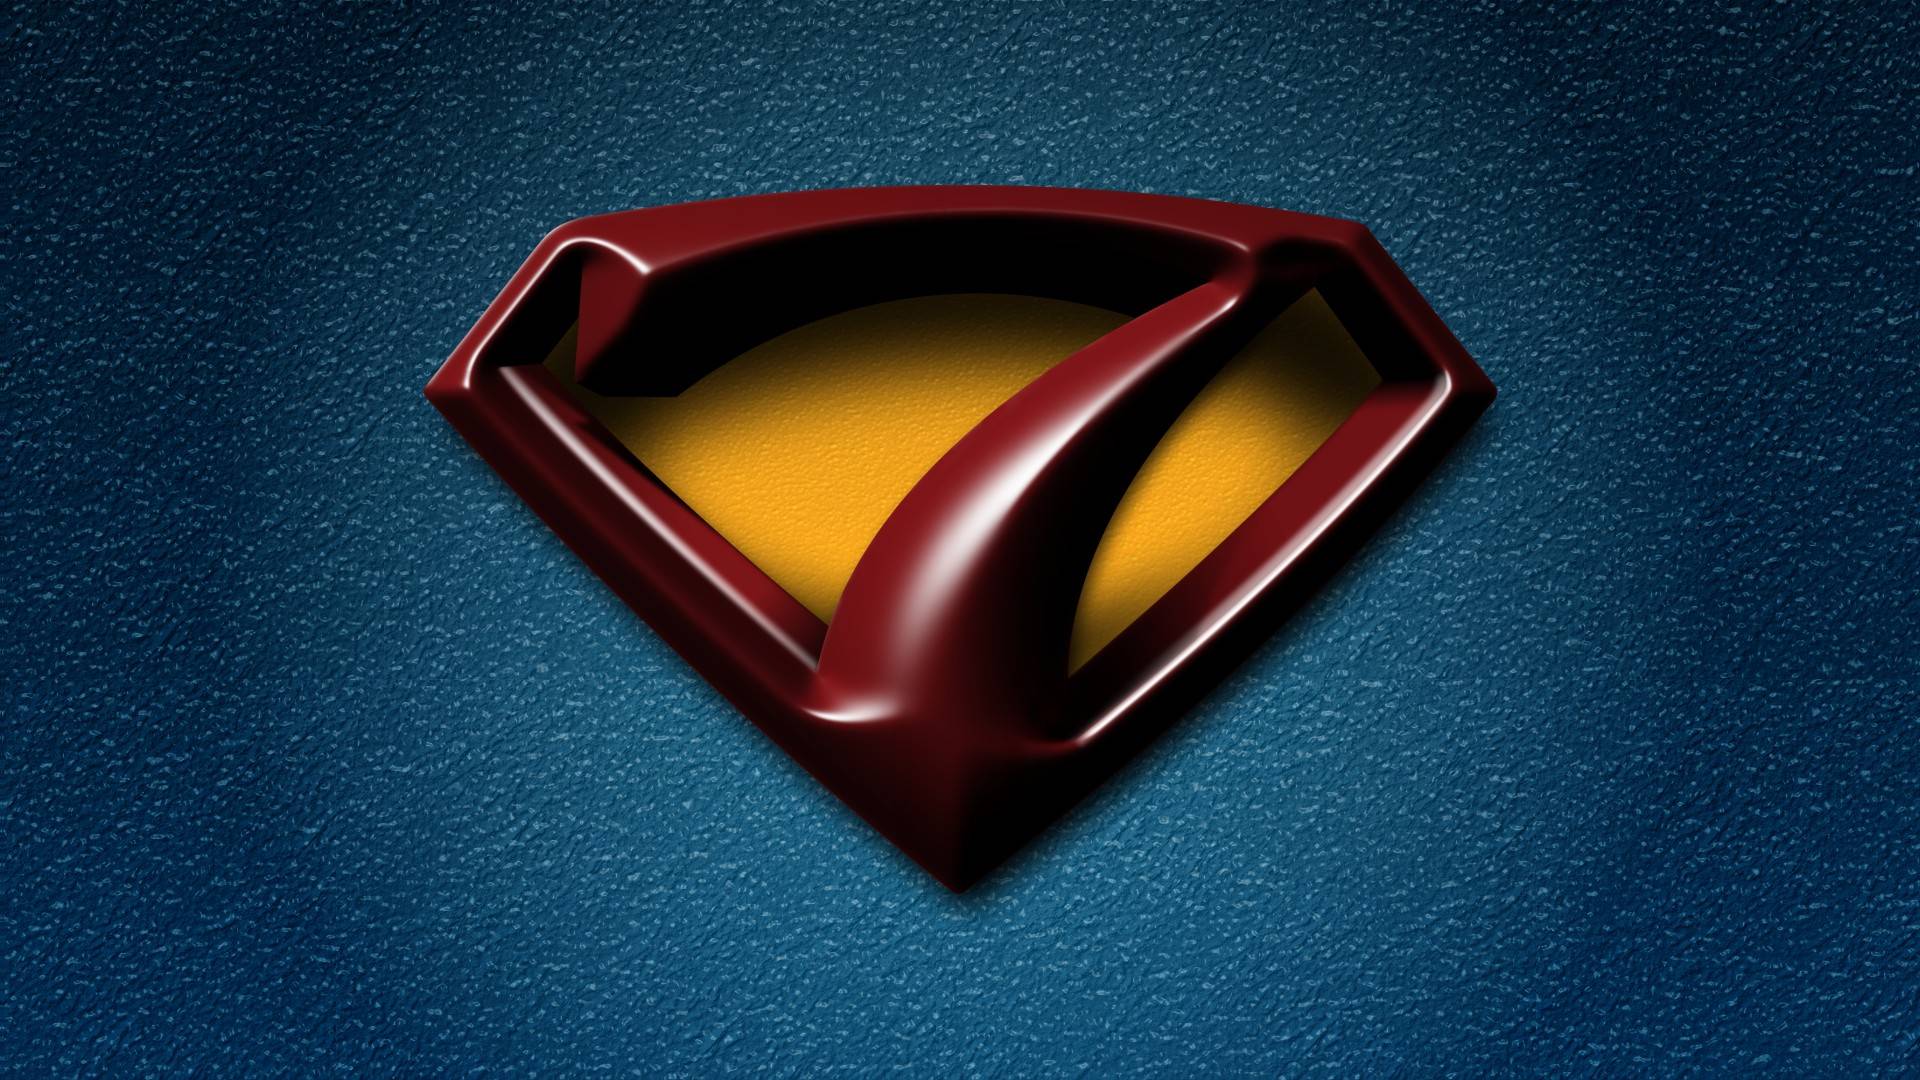 superman logo wallpaper hd   weddingdressincom